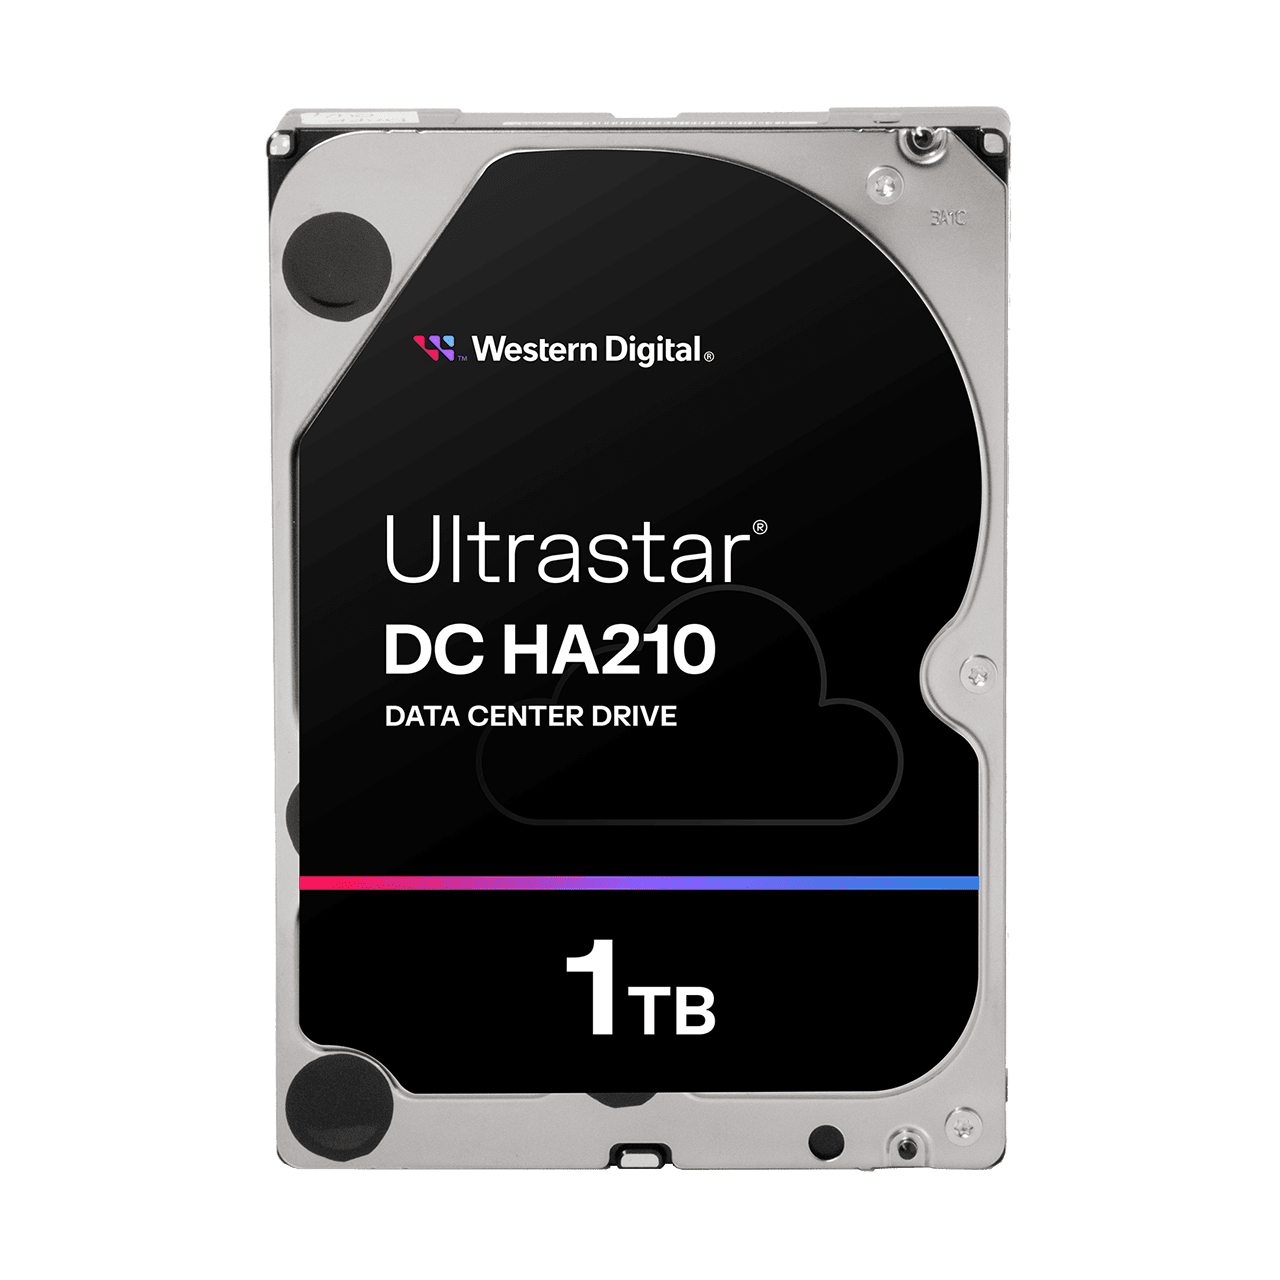 Ultrastar® DC HA210 | Western Digital